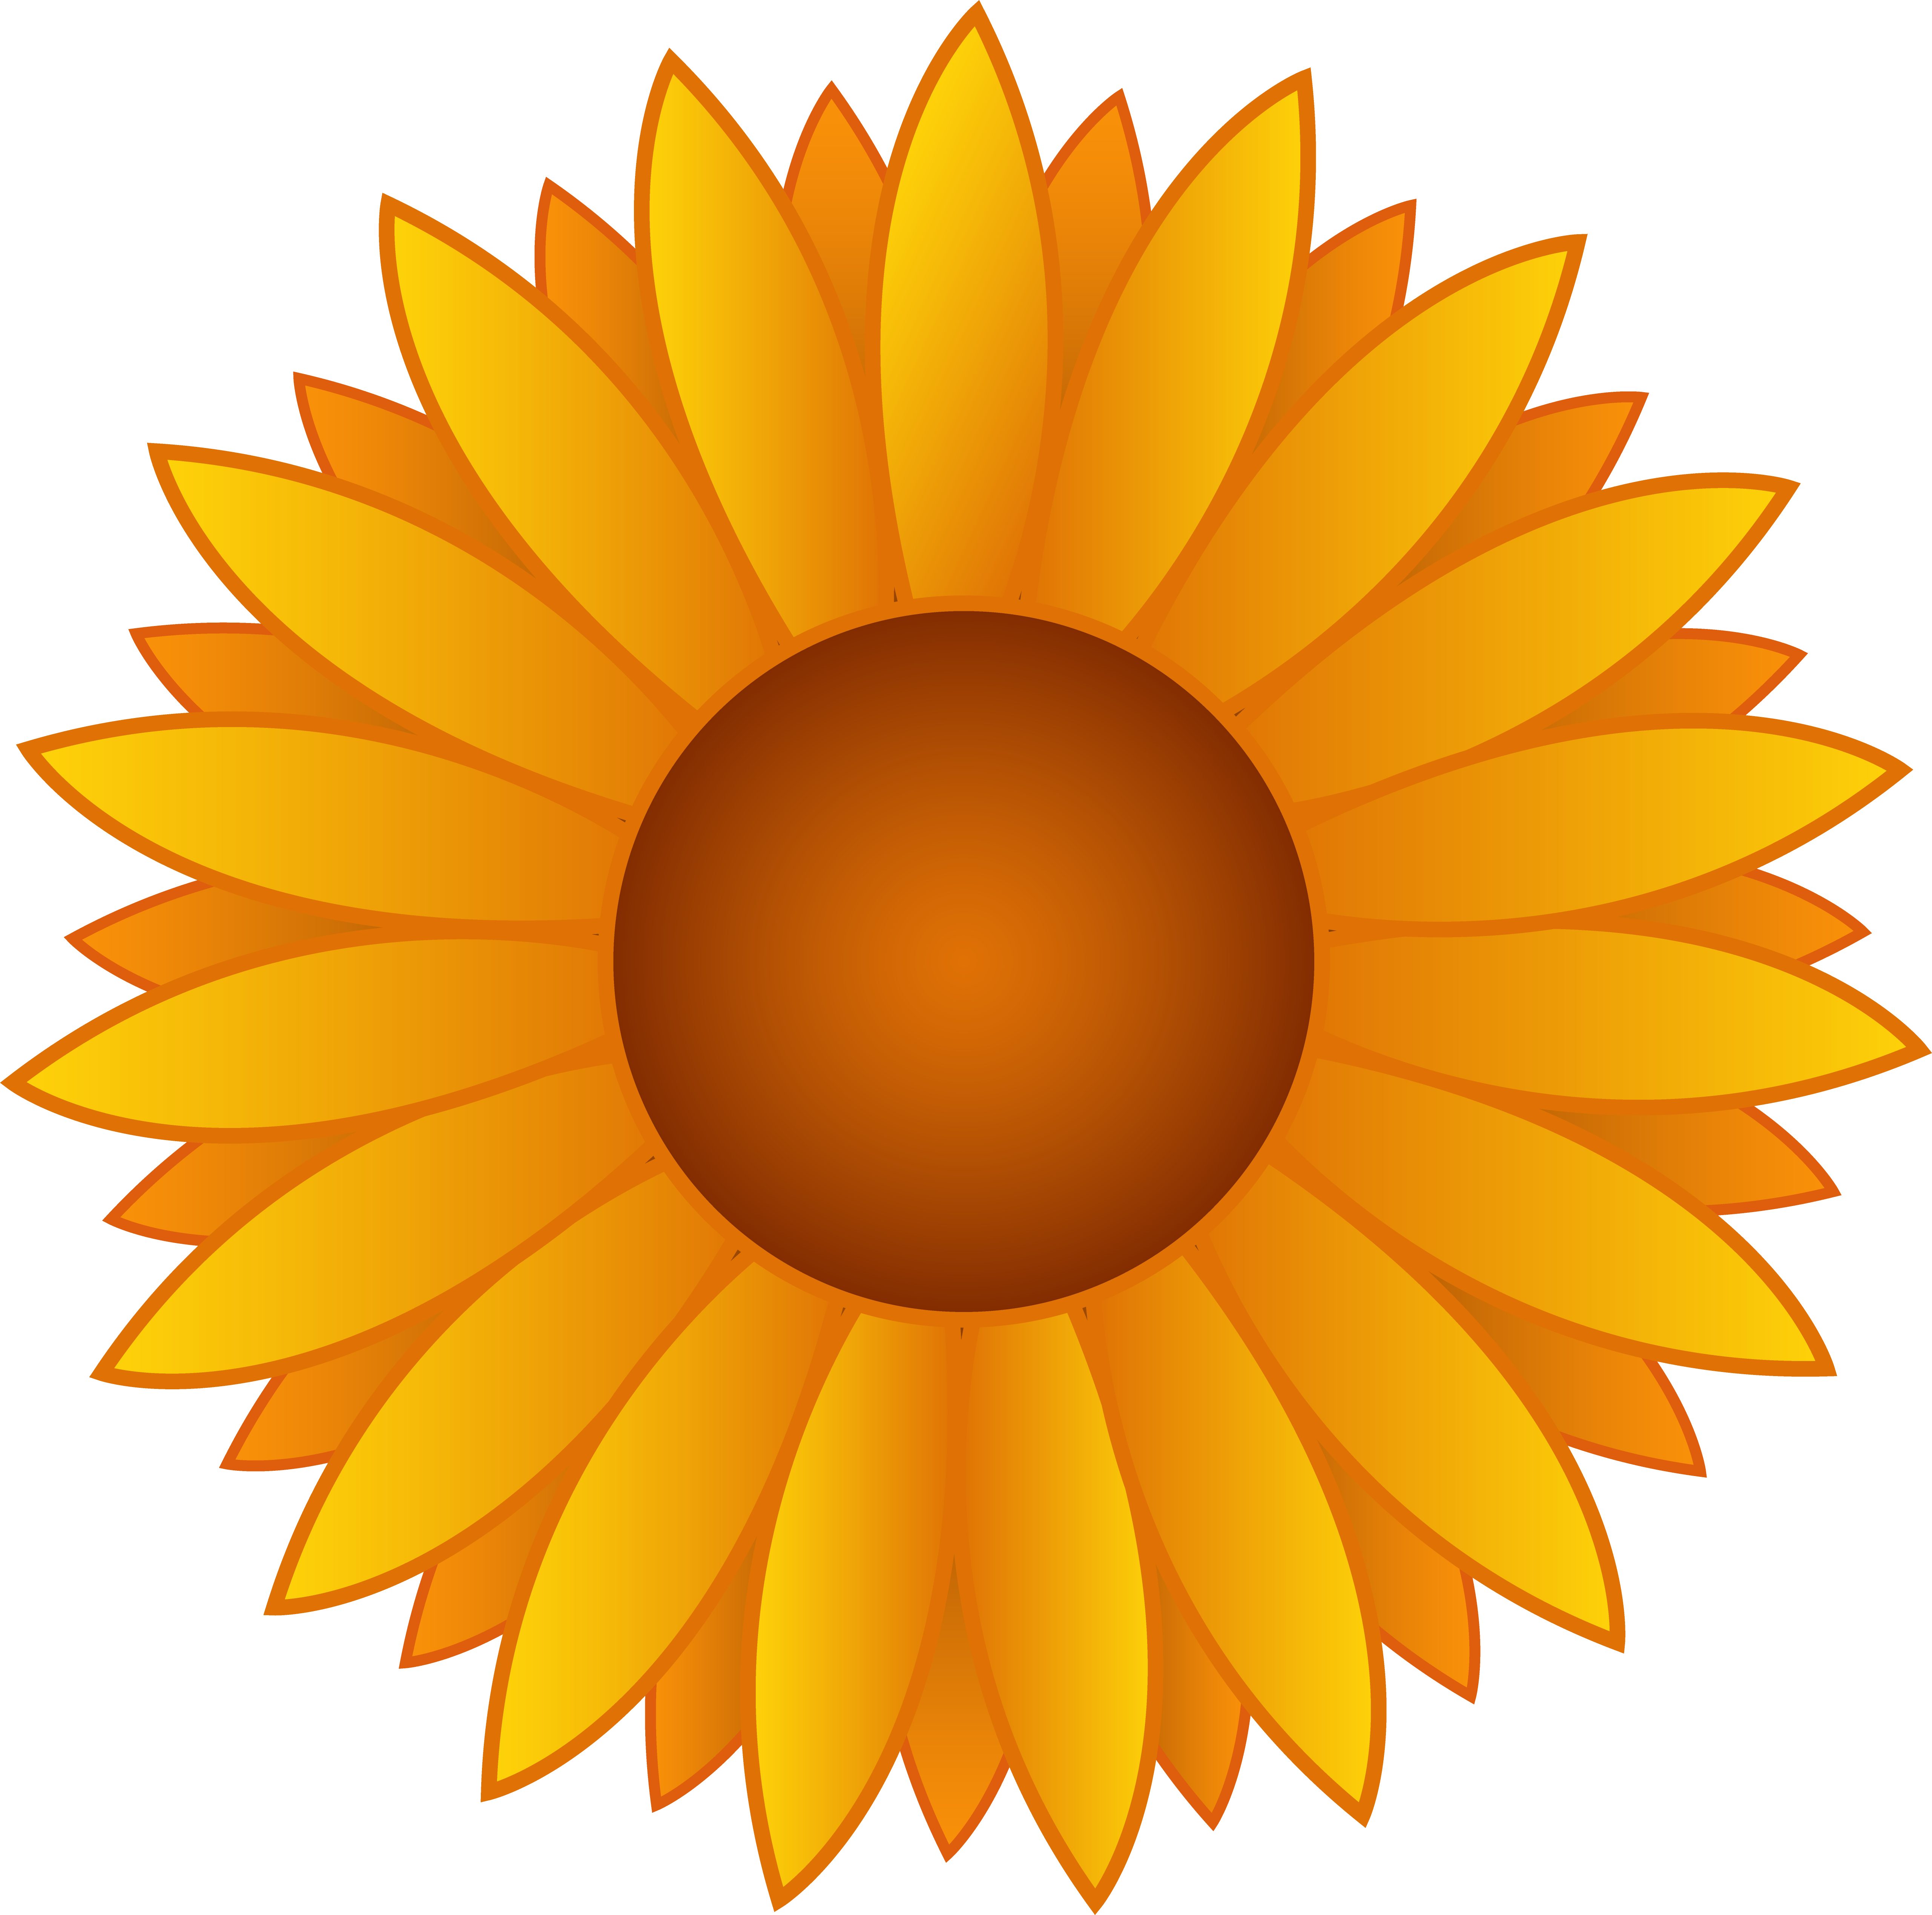 Yellow sunflower vector.